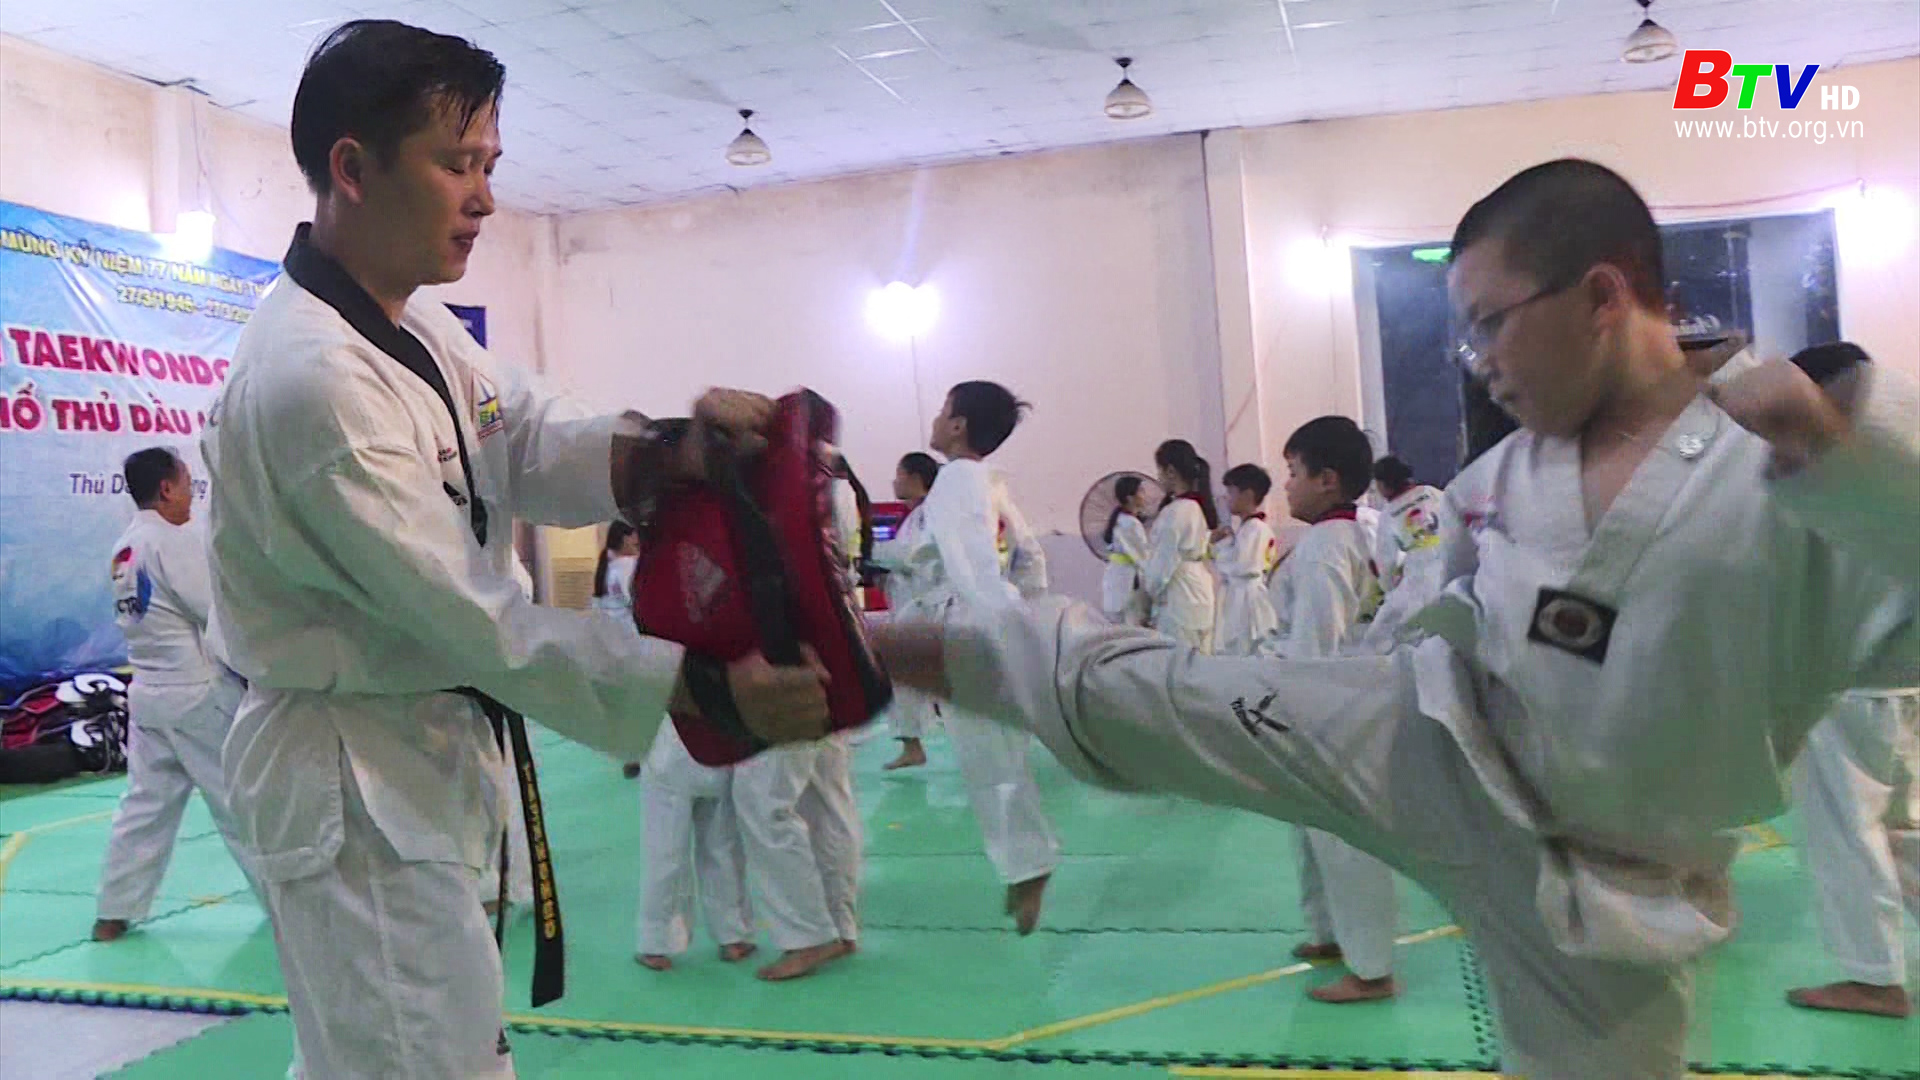 Lớp học Taekwondo của một chiến sĩ công an nhân dân